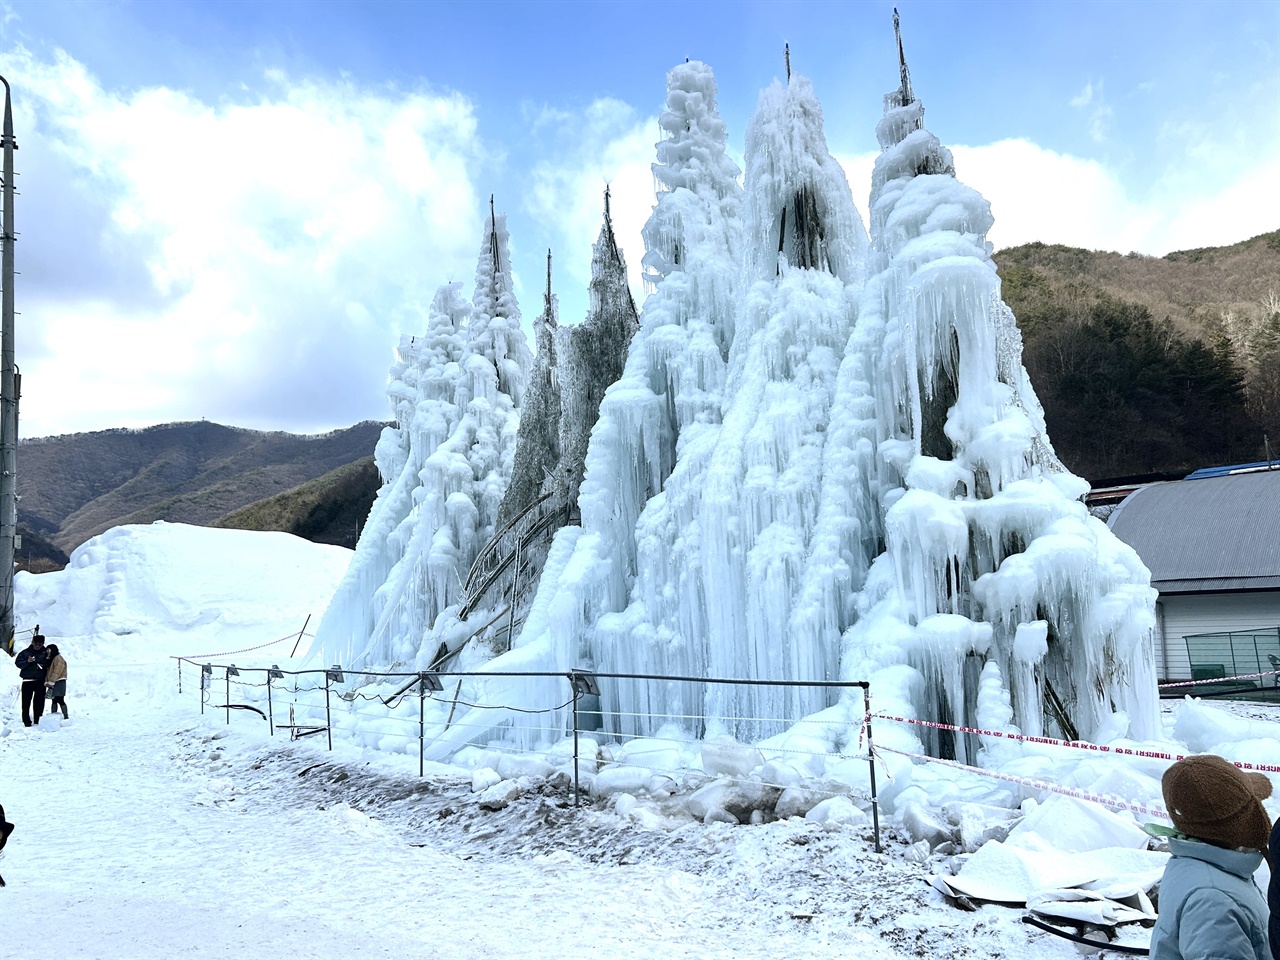 알프스마을은 지난 2008년부터 얼음분수축제가 열려 매년 많은 볼거리와 다양한 체험까지 할 수 있는 알프스마을 대표 축제다.